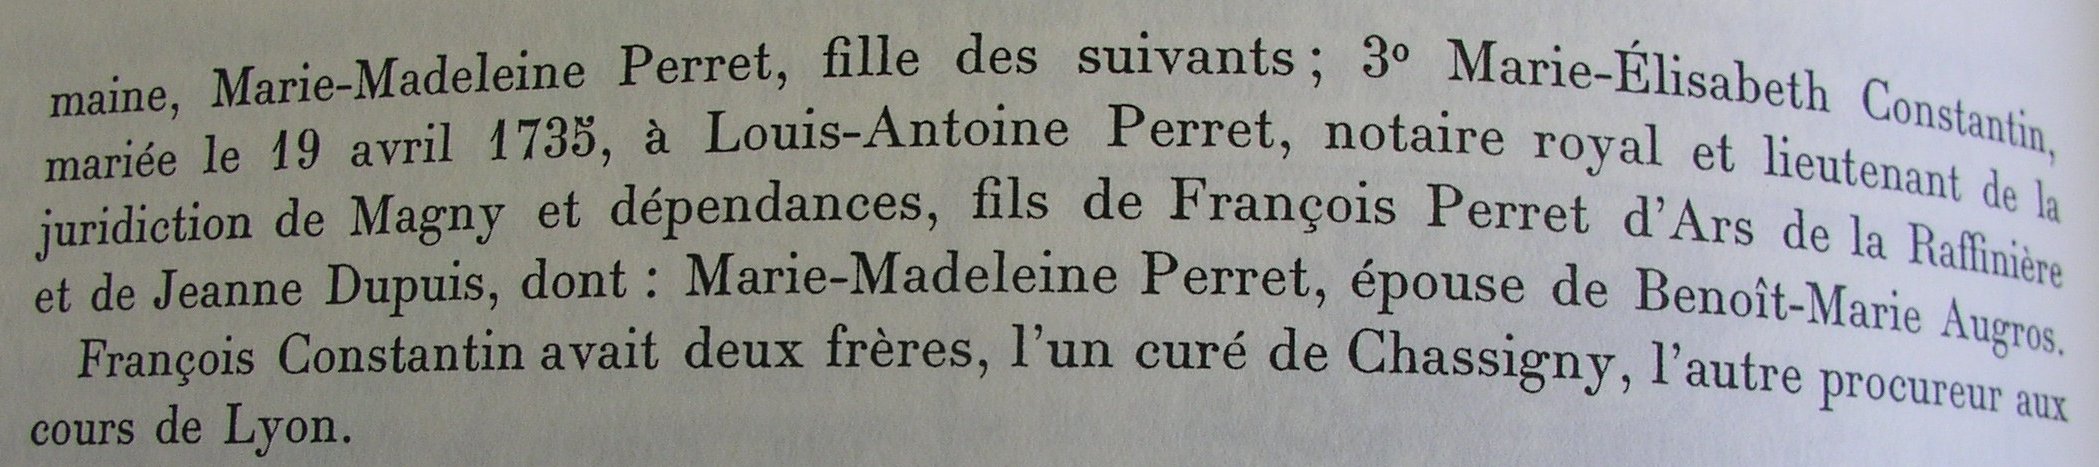 Ex-libris de François Constantin, bourgeois de St-Germain-la-Montagne, suite